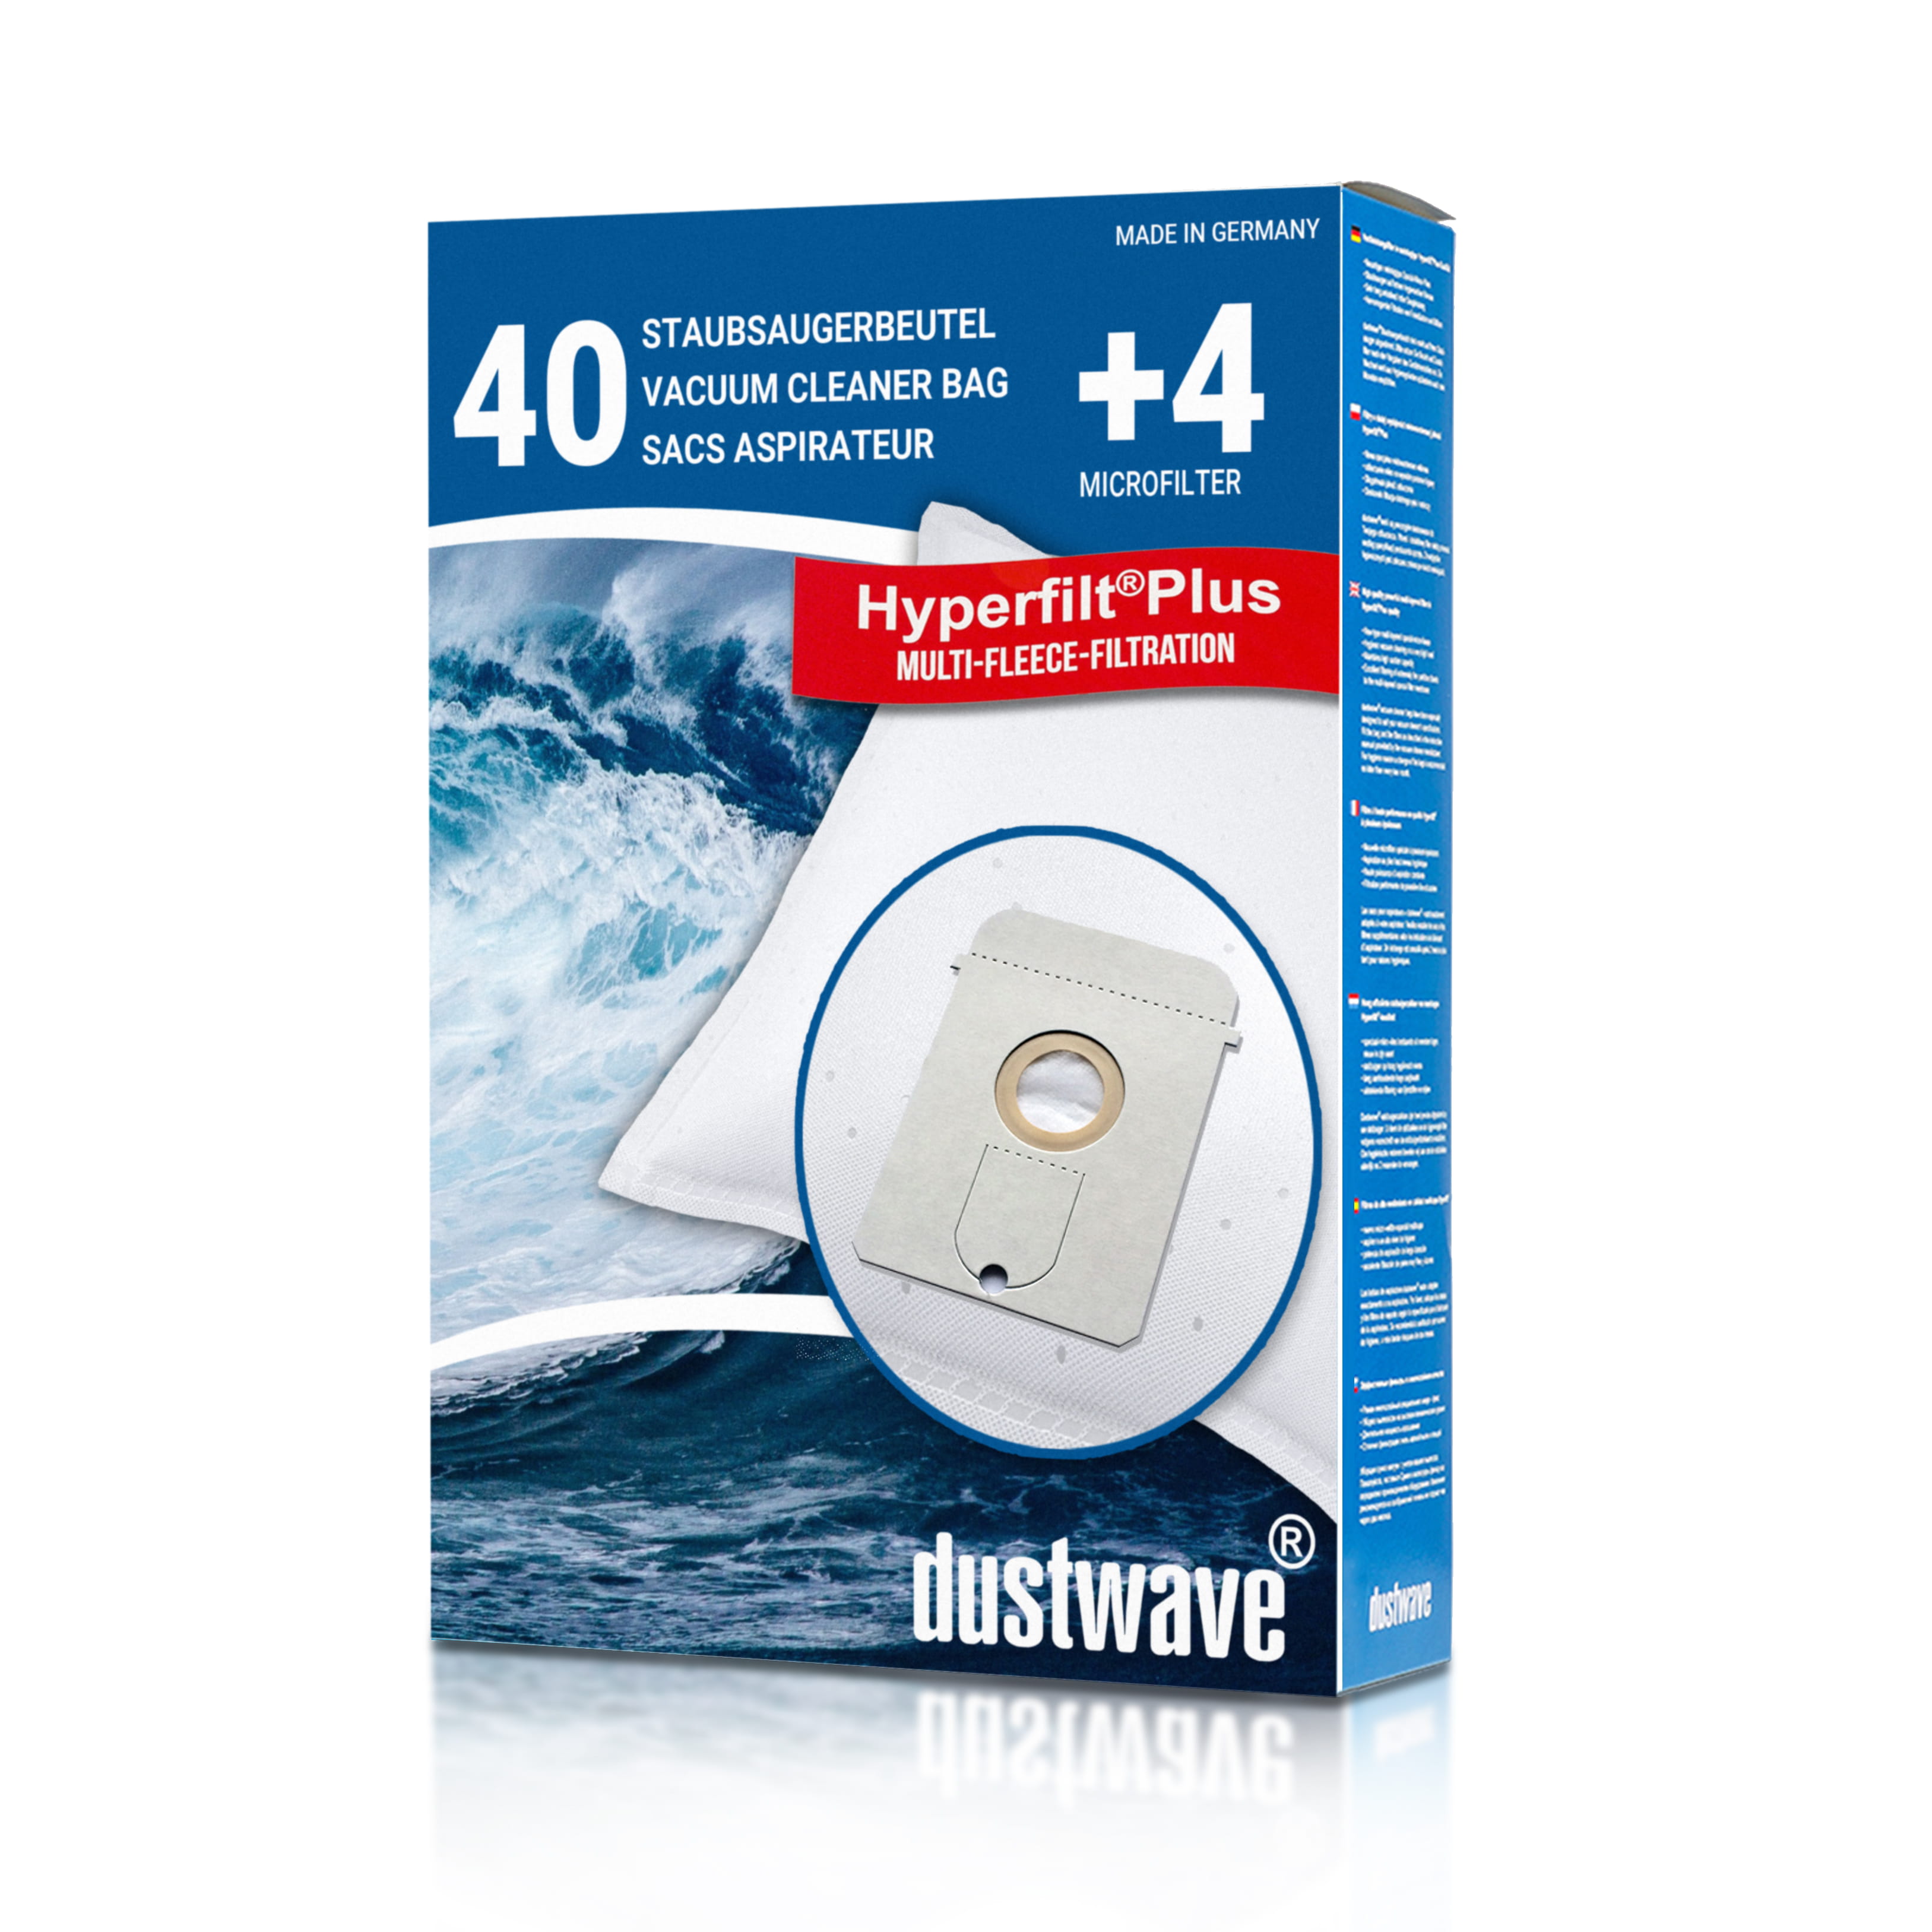 Dustwave® 40 Staubsaugerbeutel für AEG Vampyr 6210 Electronic - hocheffizient, mehrlagiges Mikrovlies mit Hygieneverschluss - Made in Germany